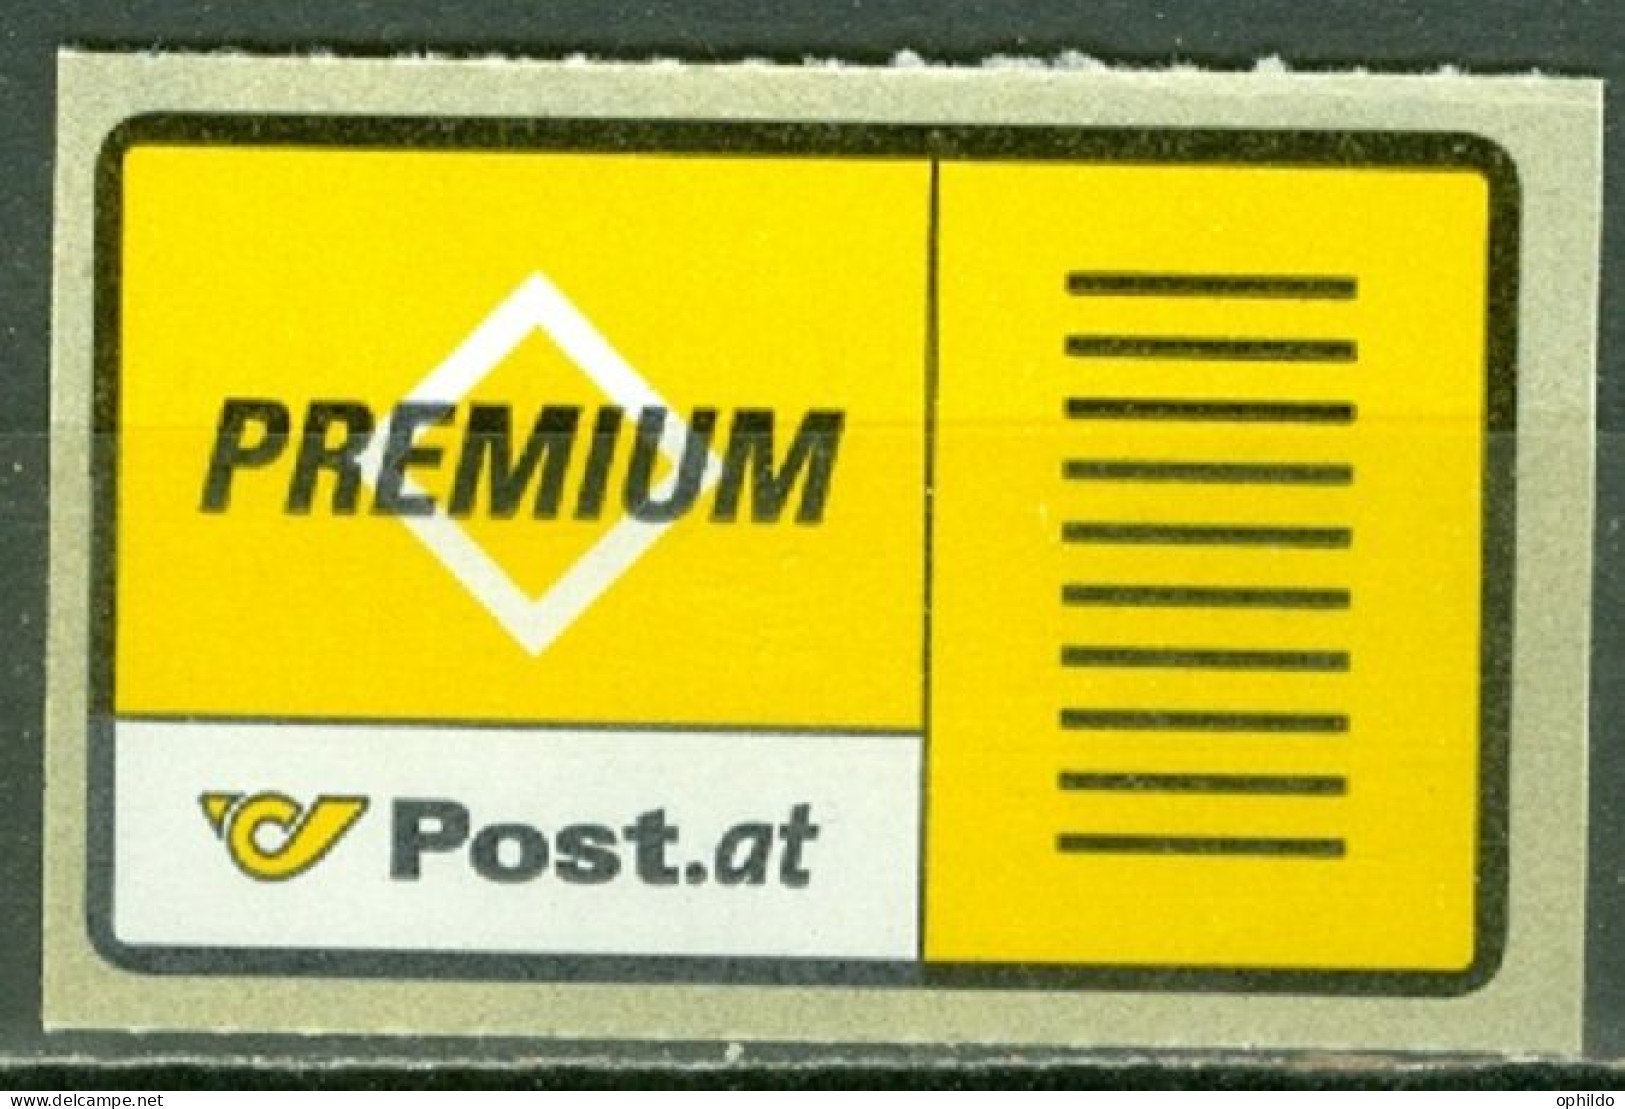 Autriche   Premium-Brief - Wertzeichen  Michel  1  * *  TB   - Unused Stamps